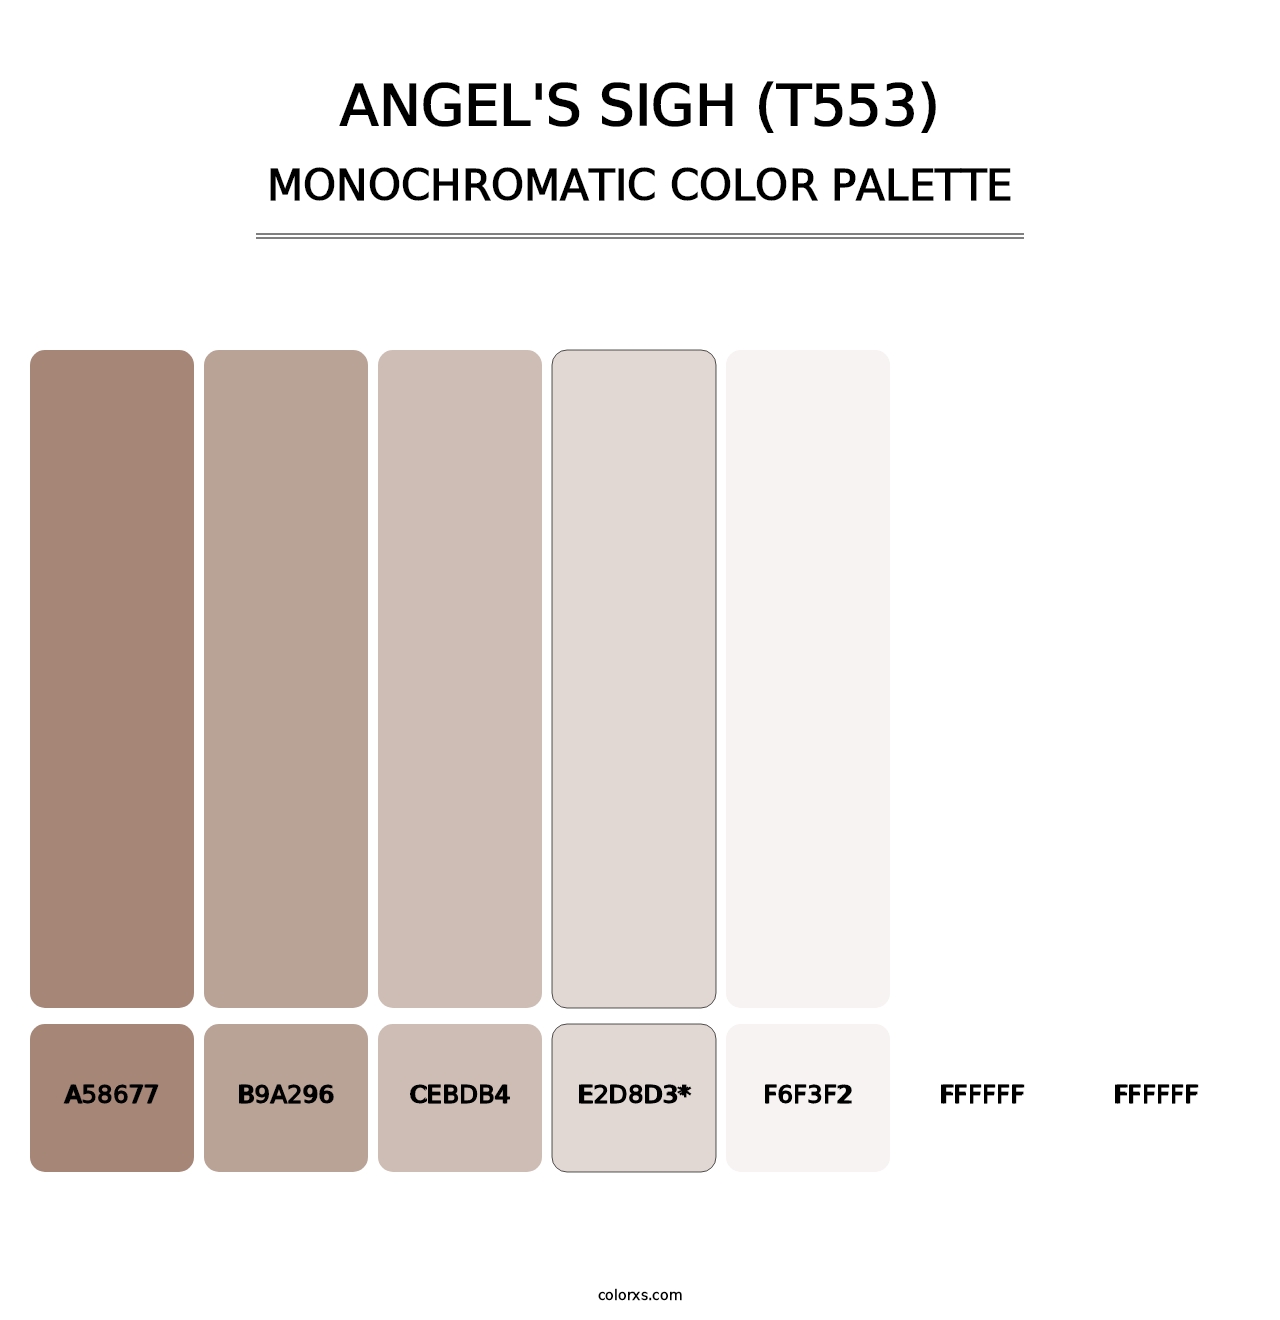 Angel's Sigh (T553) - Monochromatic Color Palette